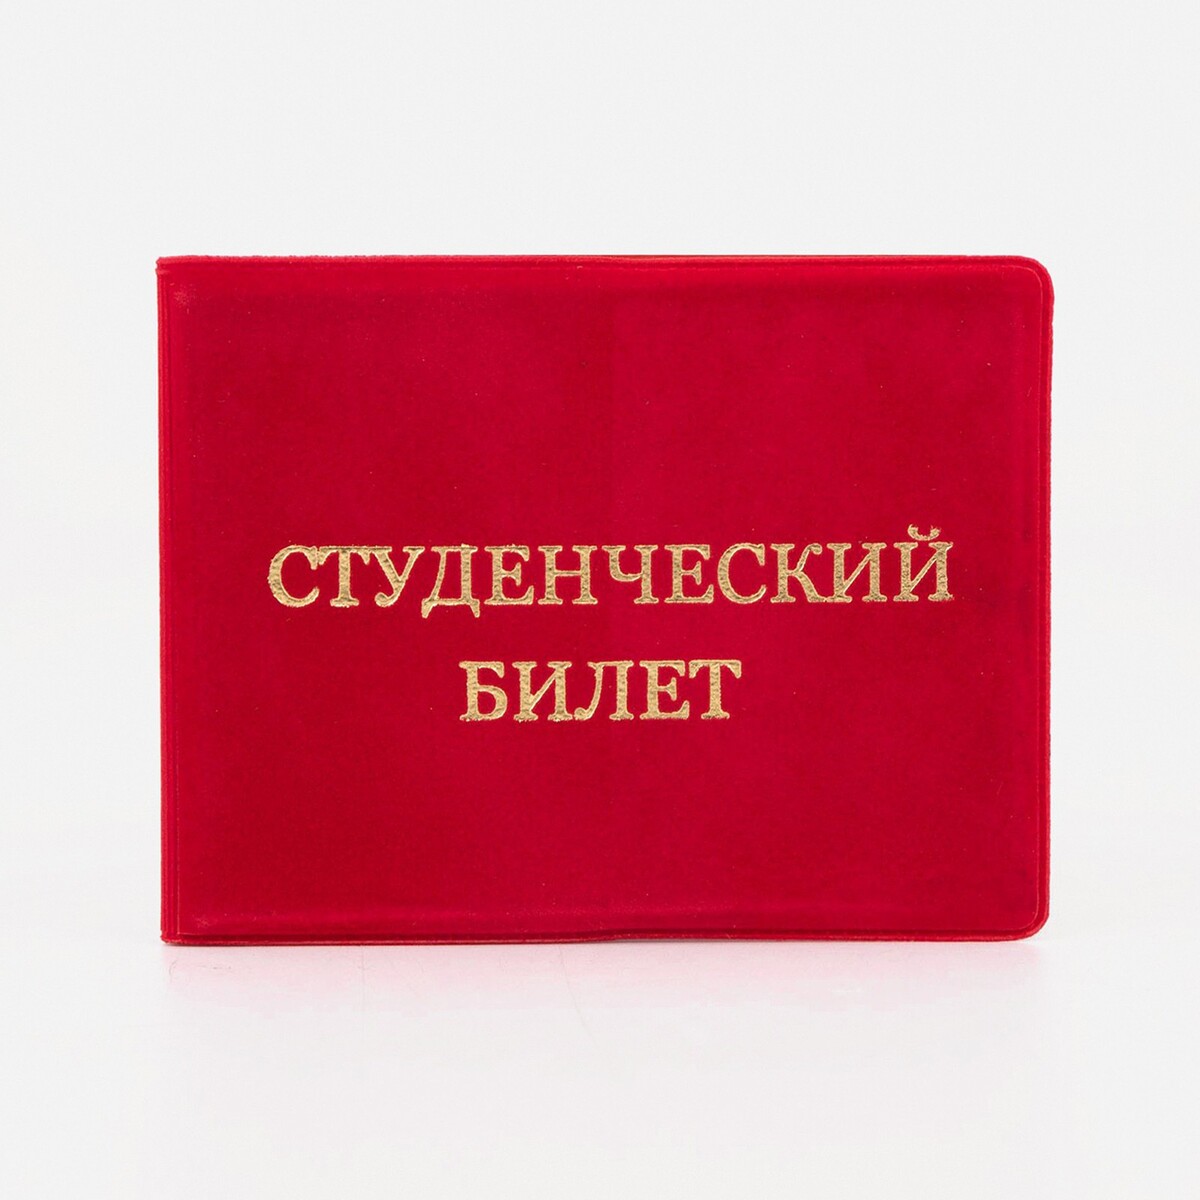 Обложка для студенческого билета, цвет красный обложка для студенческого спб девочка с котиком сб2020 050